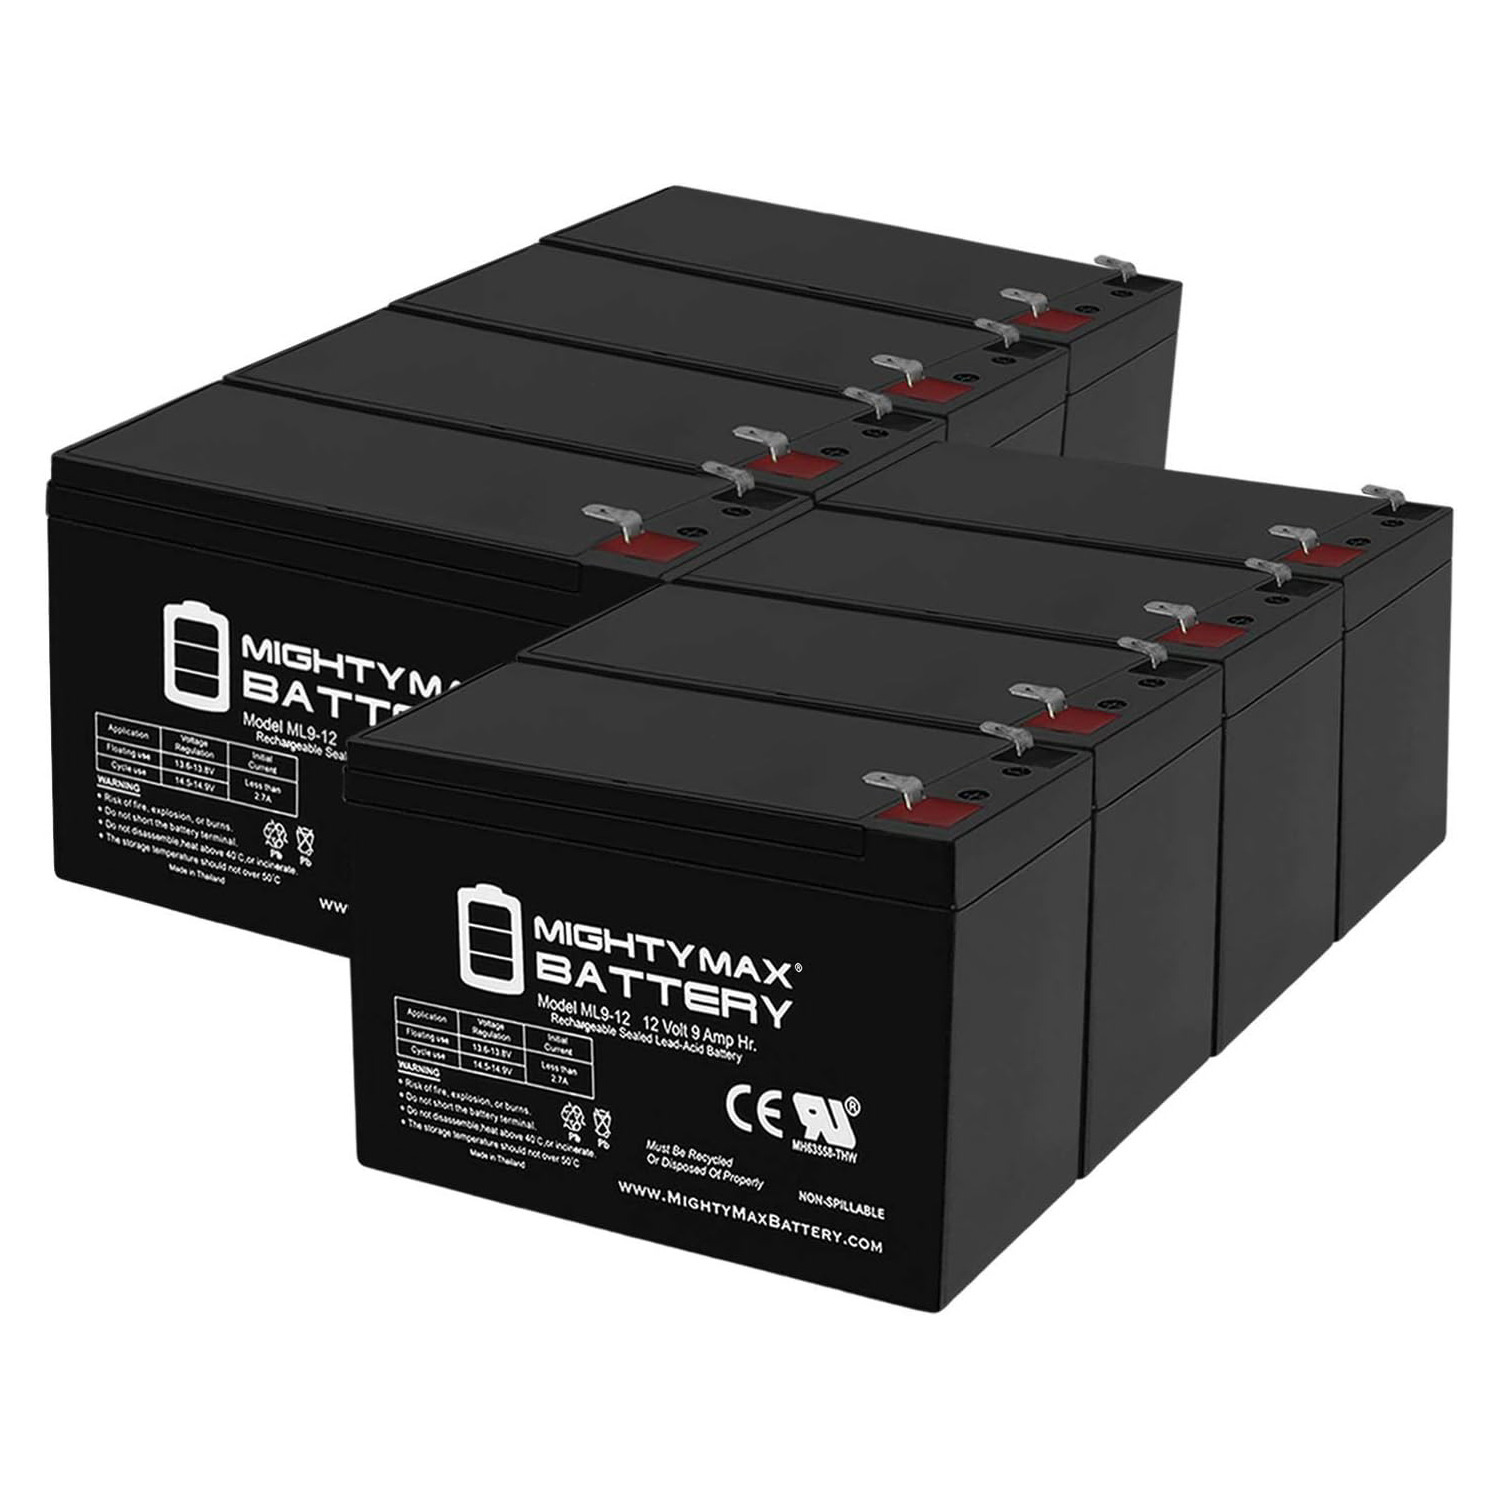 Altronix AL400ULPD8 12V, 9Ah Lead Acid Battery - 8 Pack